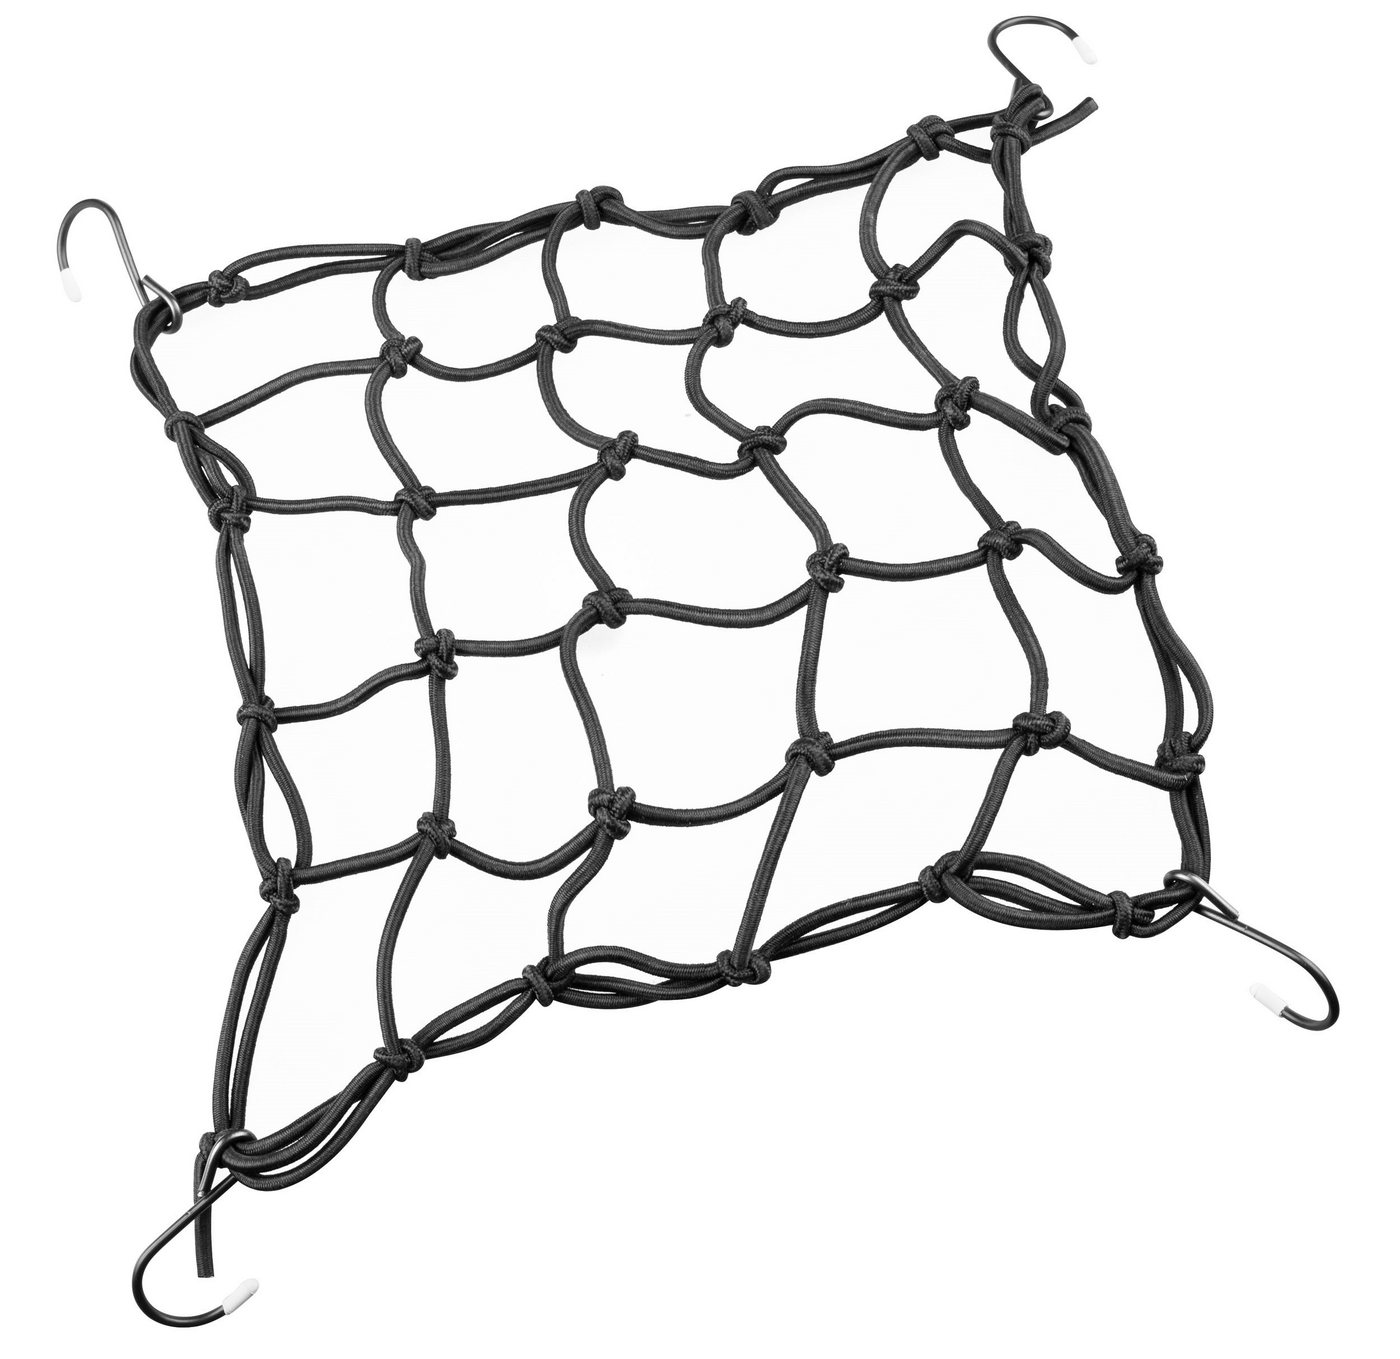 FORCE Fahrrad-Gepäckträger elastische Bänder Netz", 25 x 25 cm, schwarz" von FORCE